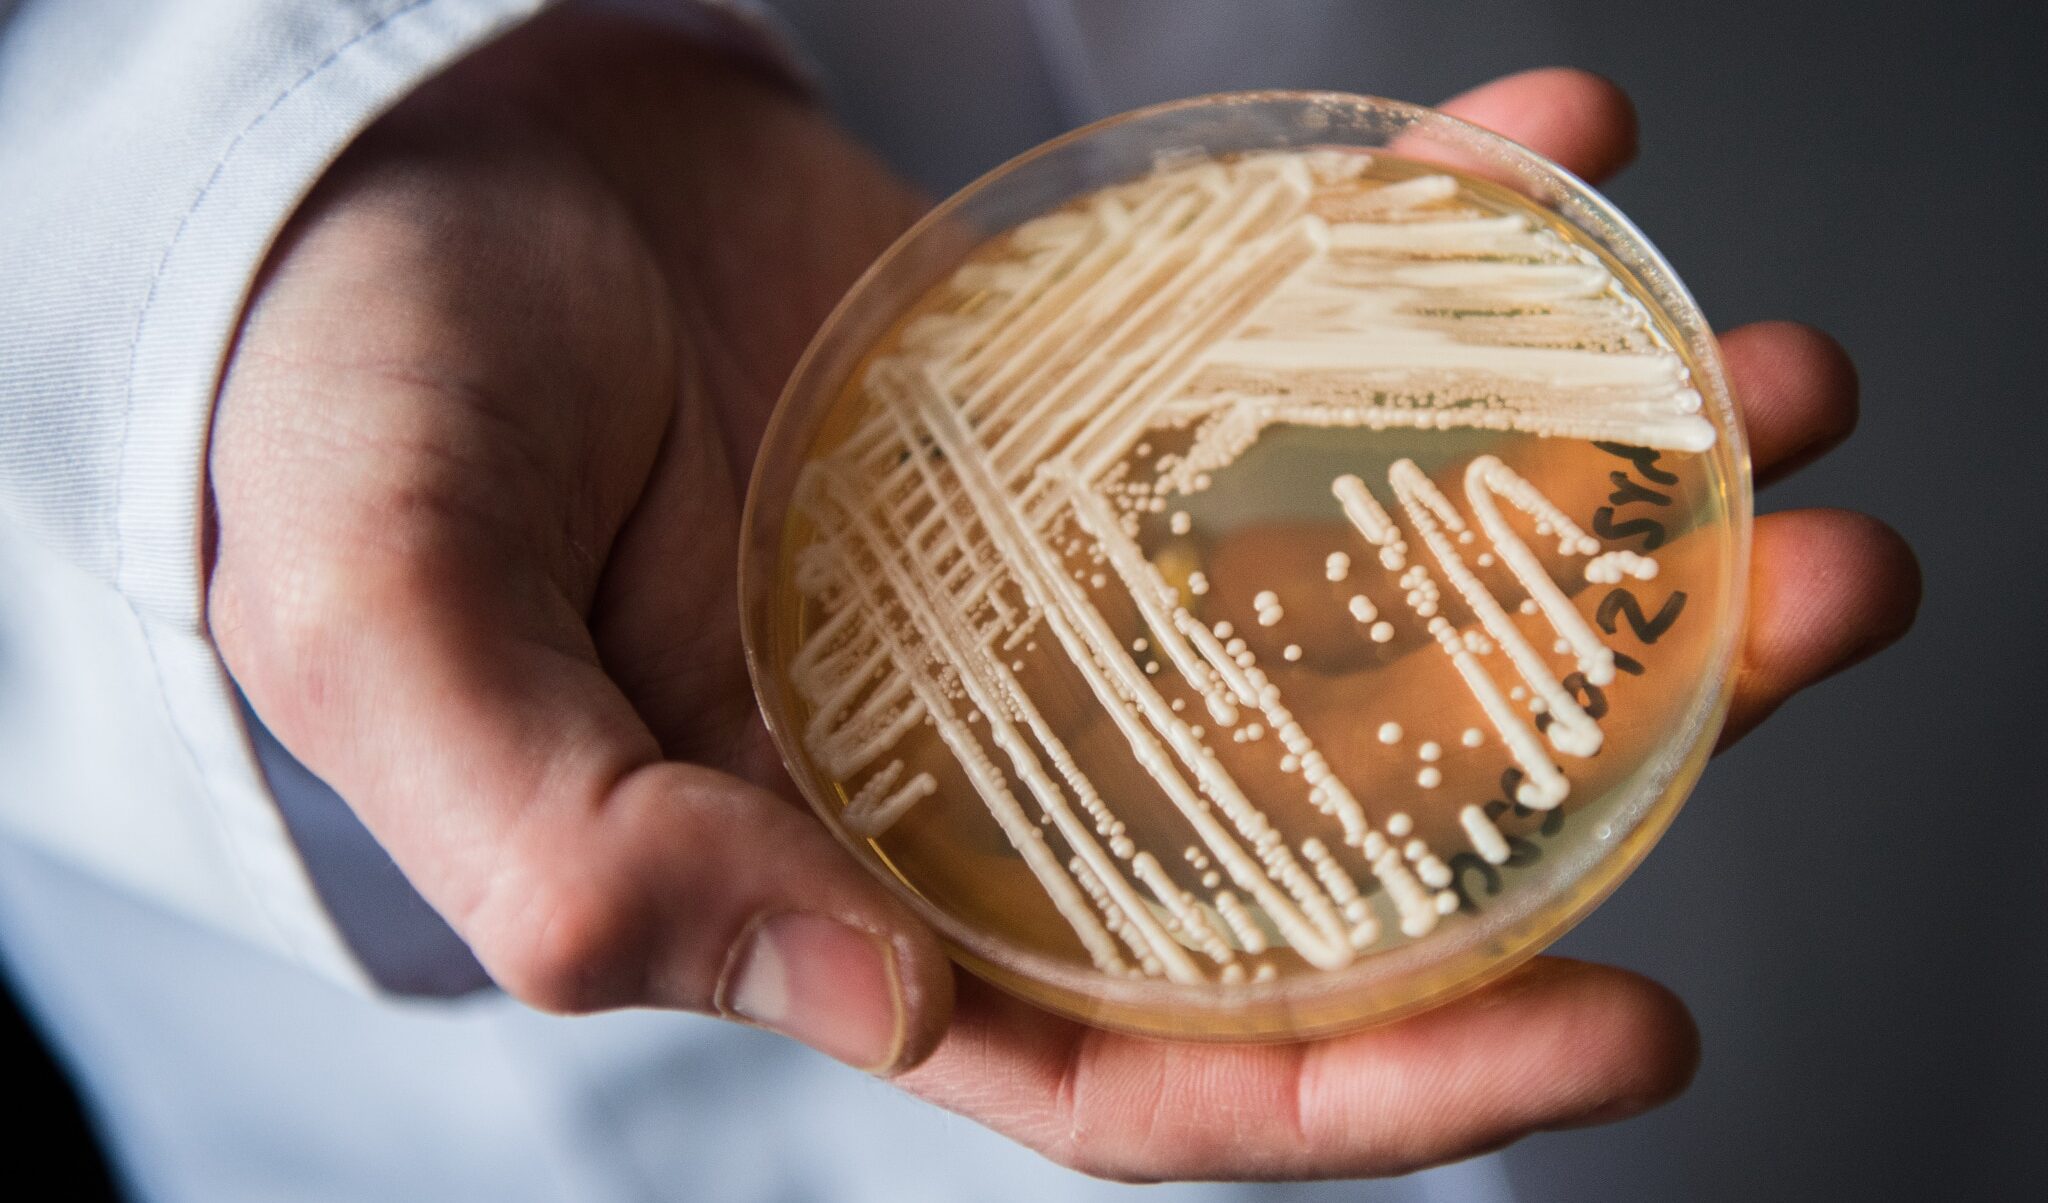 Cosa è la Candida auris, il fungo patogeno che può essere letale